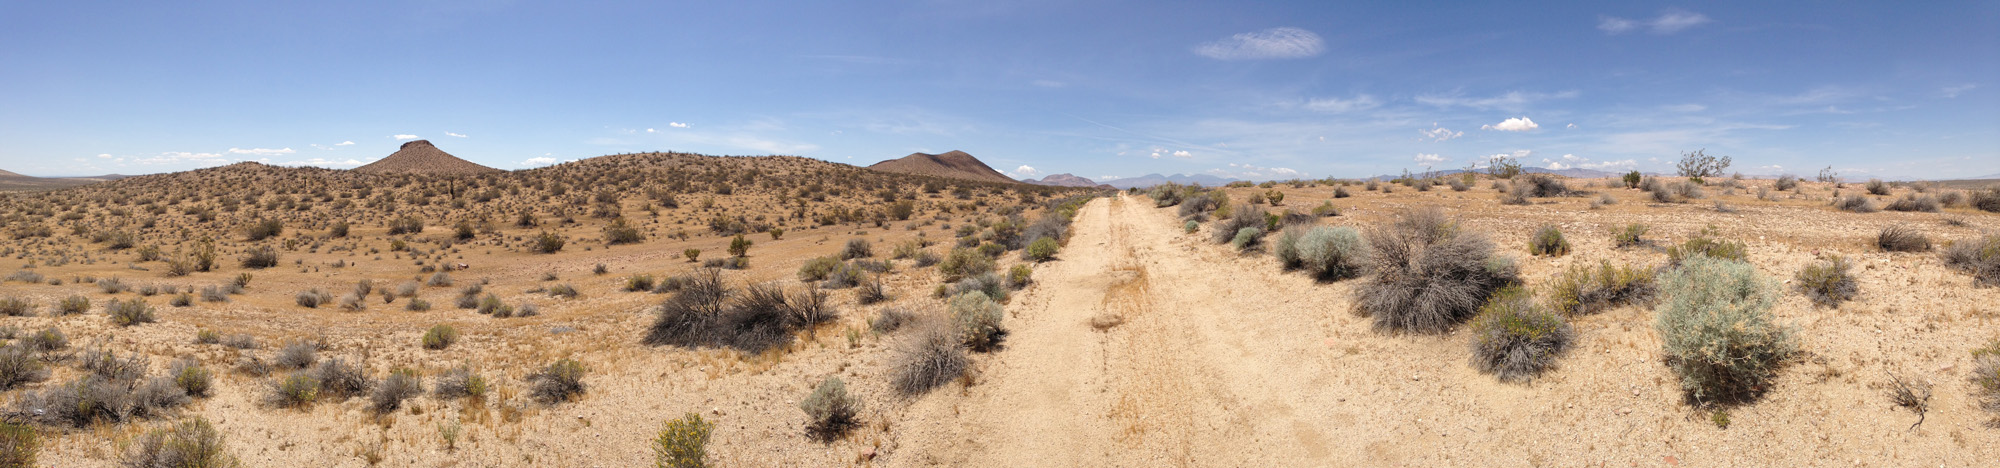 UltimateGraveyard Mojave Desert Film Location - Mountain View Panaroma